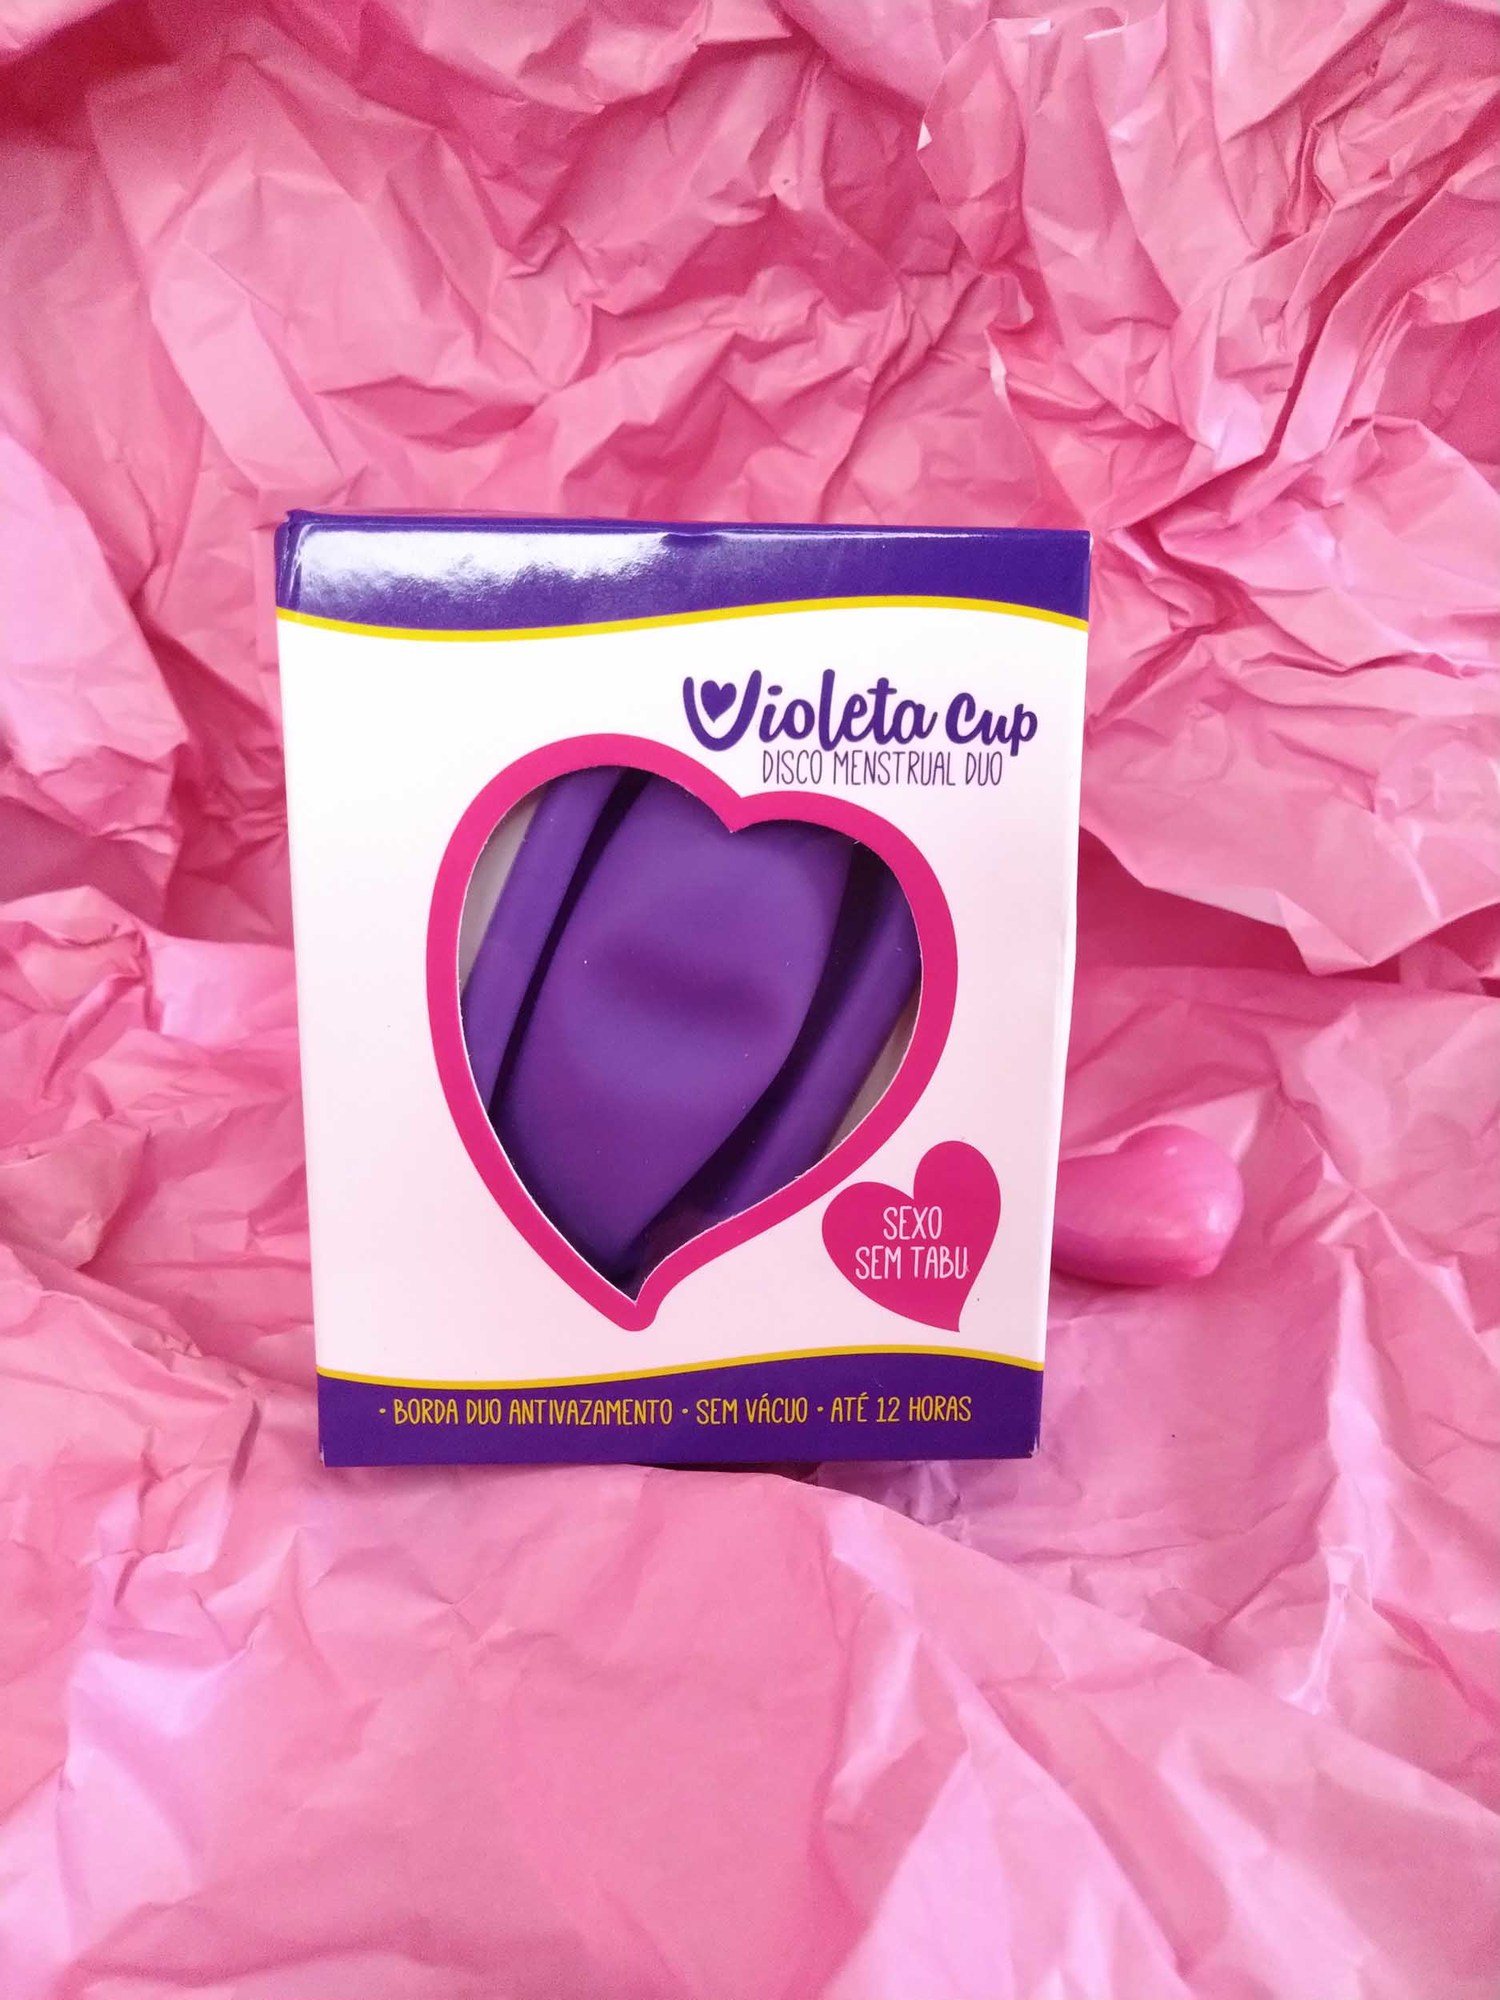 Disco Menstrual Duo Violeta Cup